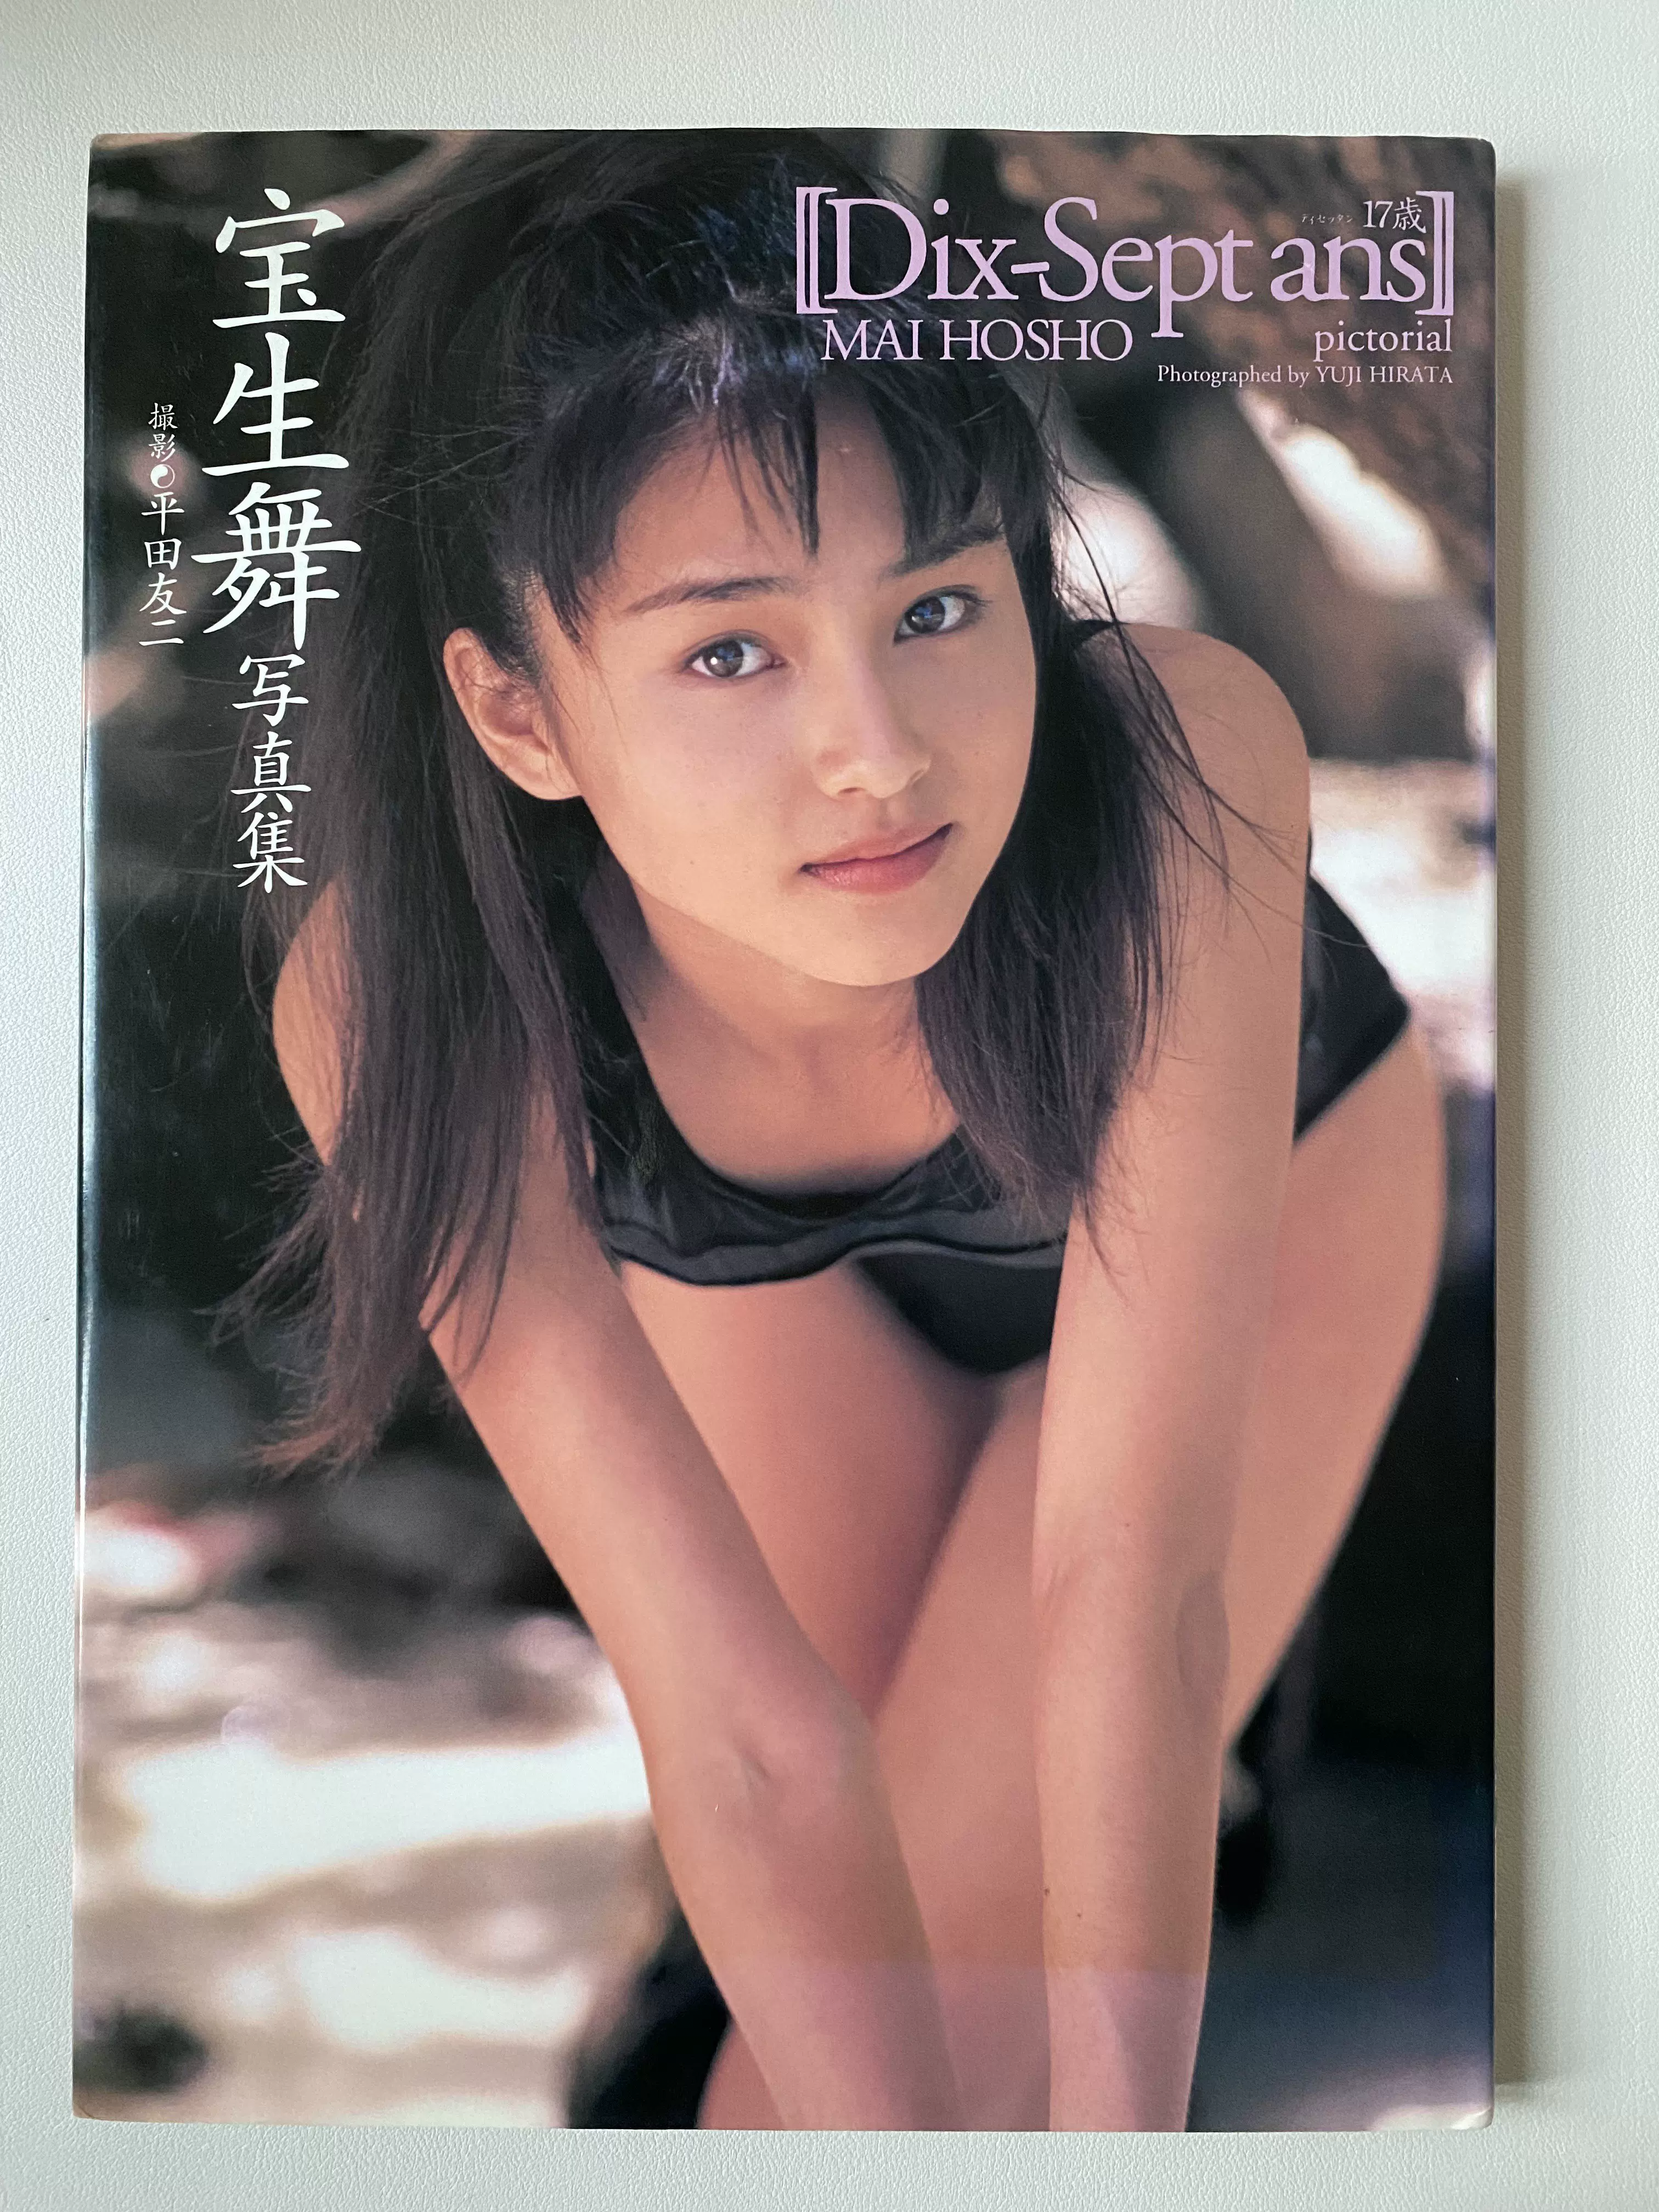 宝生舞 篠山紀信 写真集 朝日出版社 1996年 - アイドル写真集